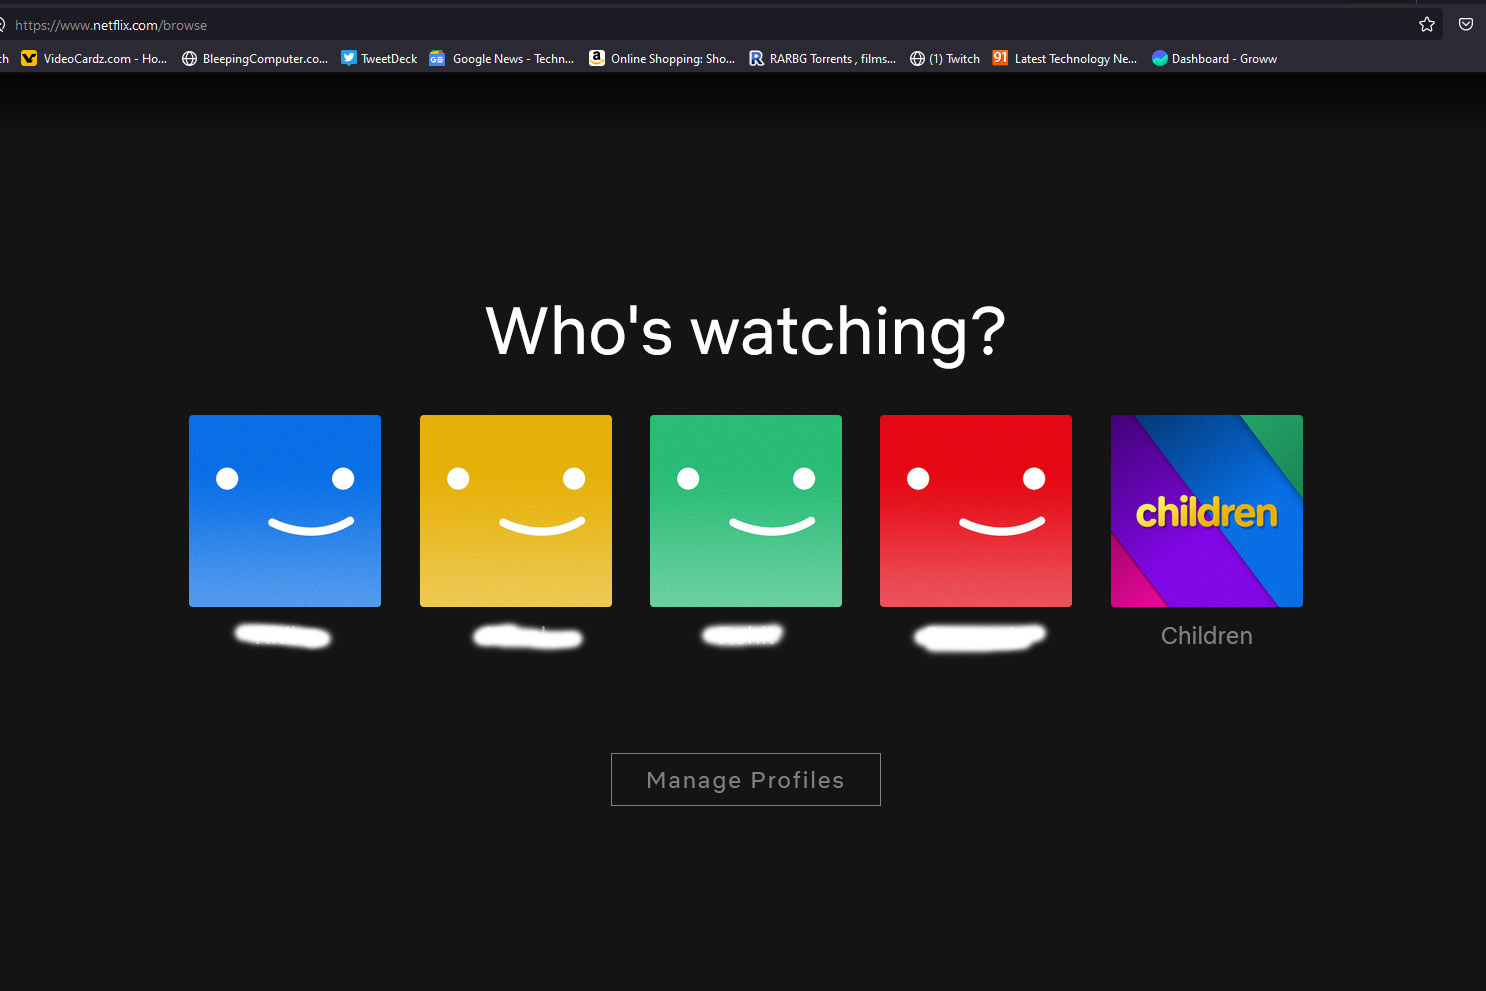 Captura de tela da página de perfis da Netflix no navegador da web.